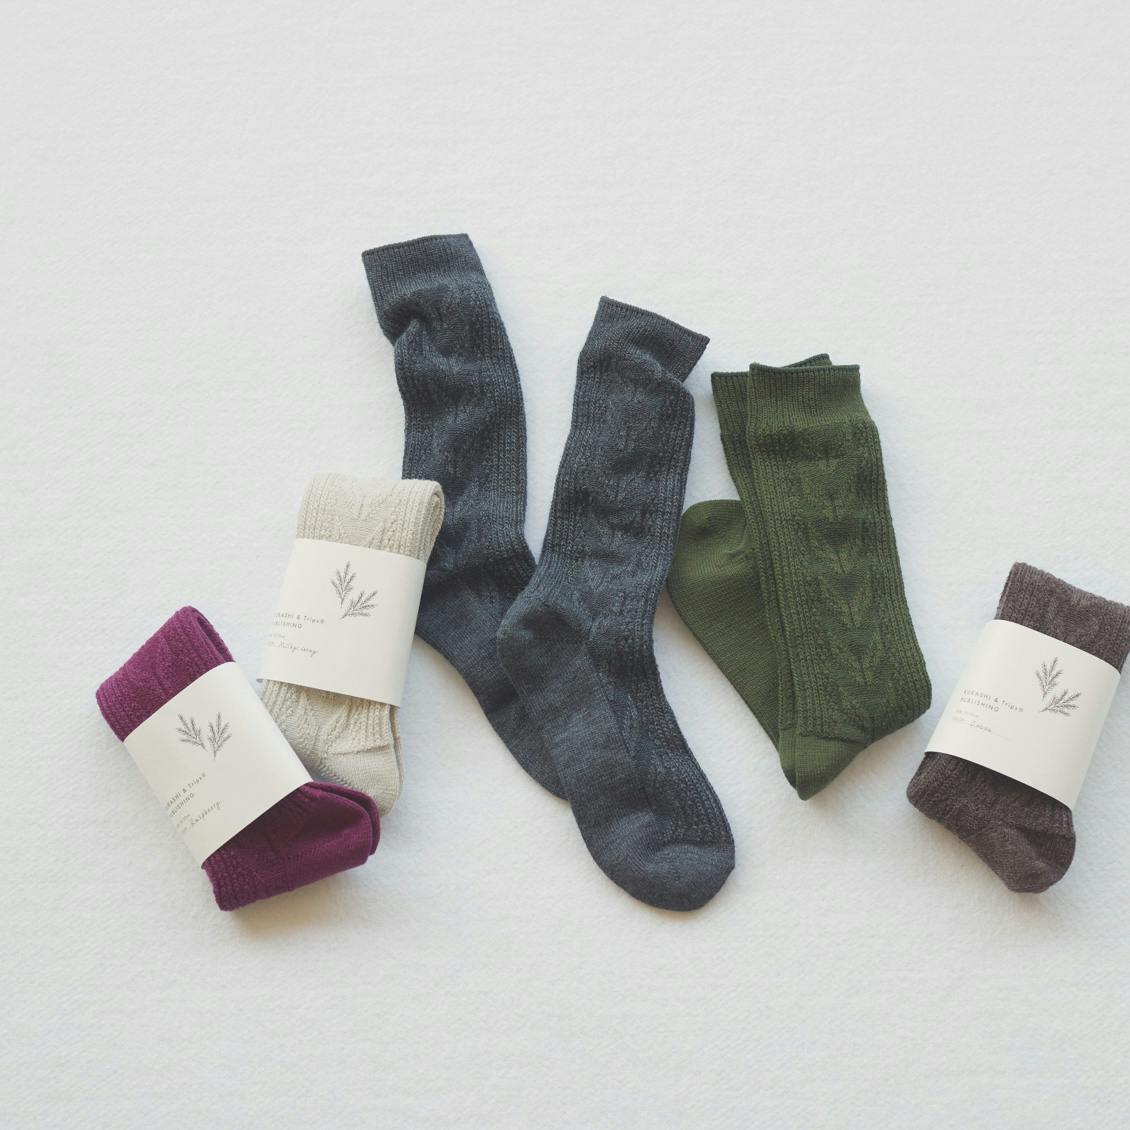 ヘリンボーン編みの靴下 - 北欧、暮らしの道具店